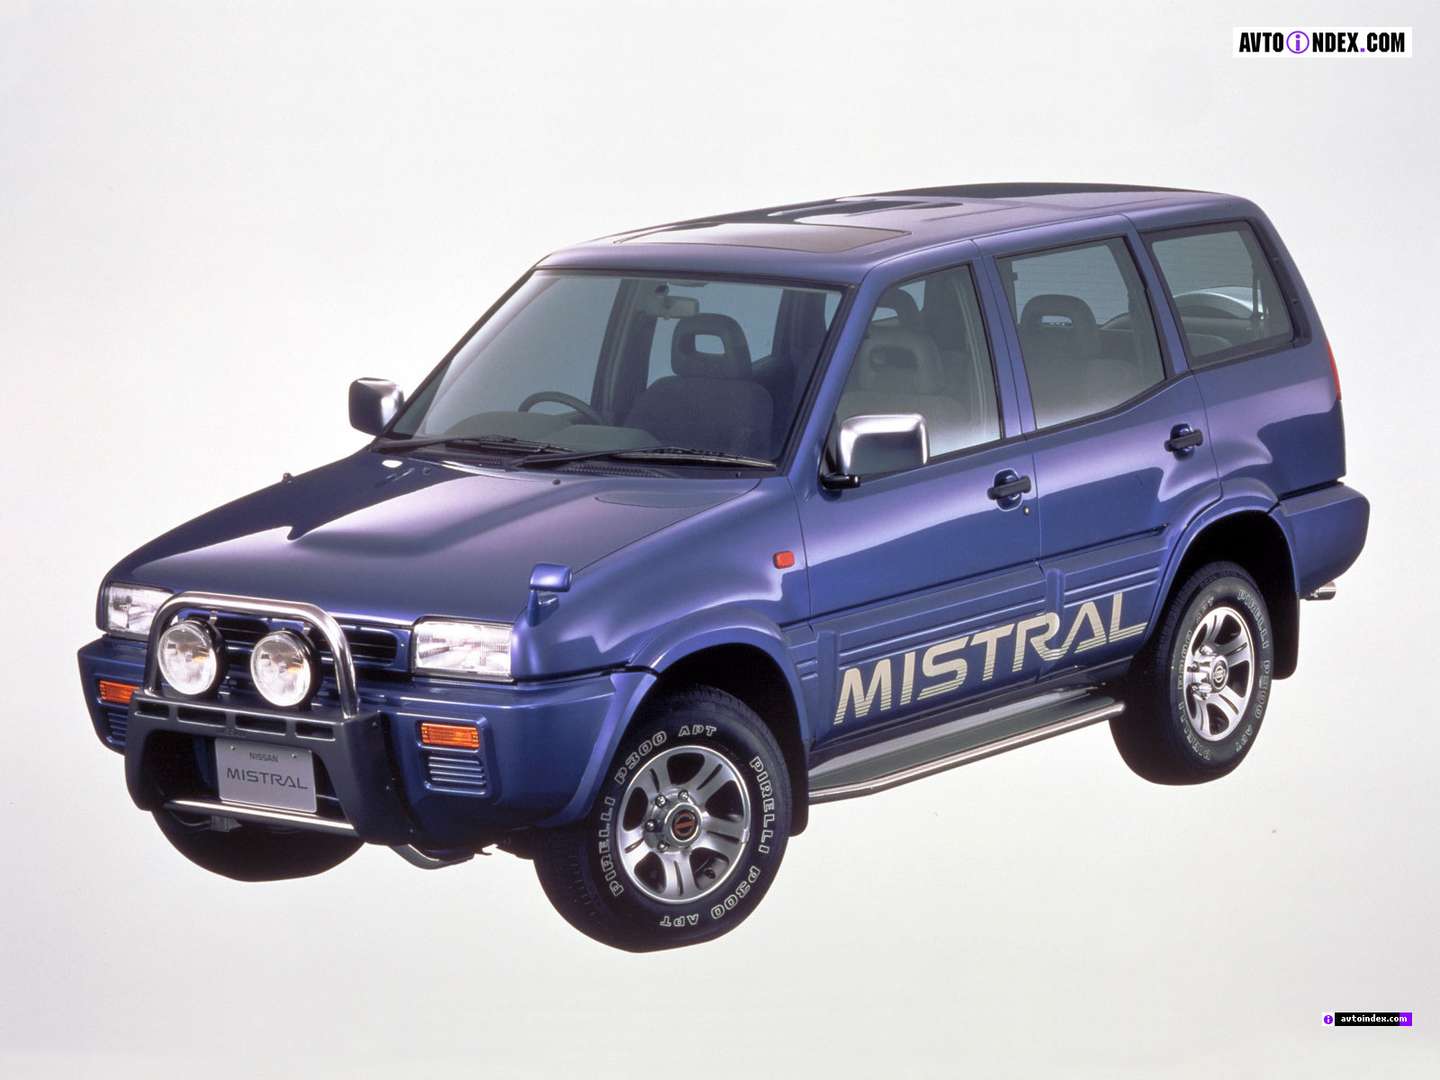 Nissan_Mistral